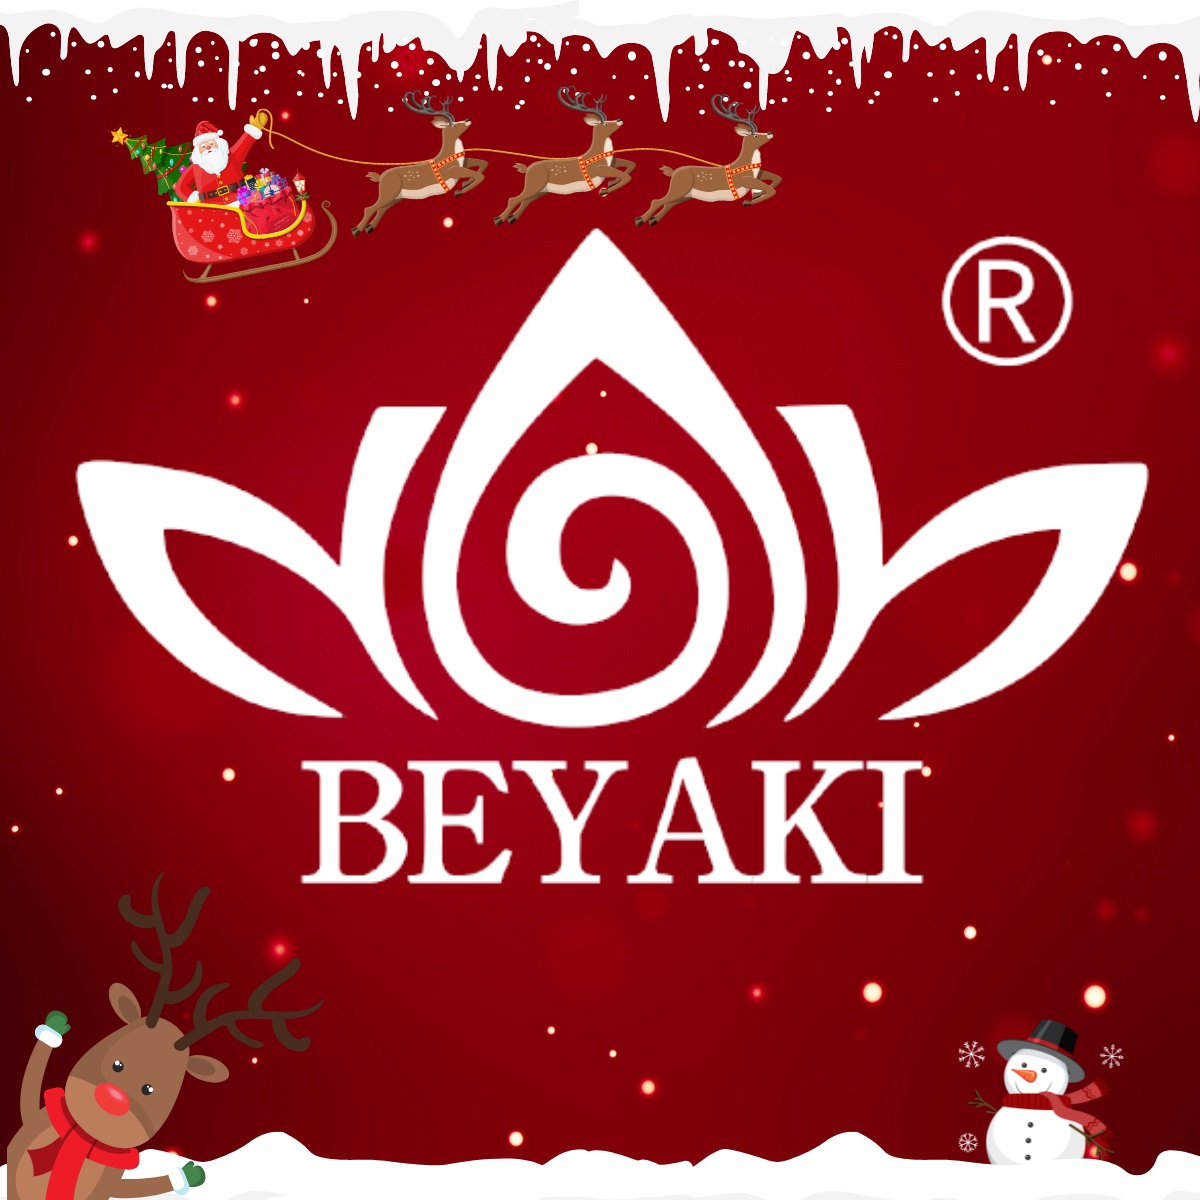 BEYAKI